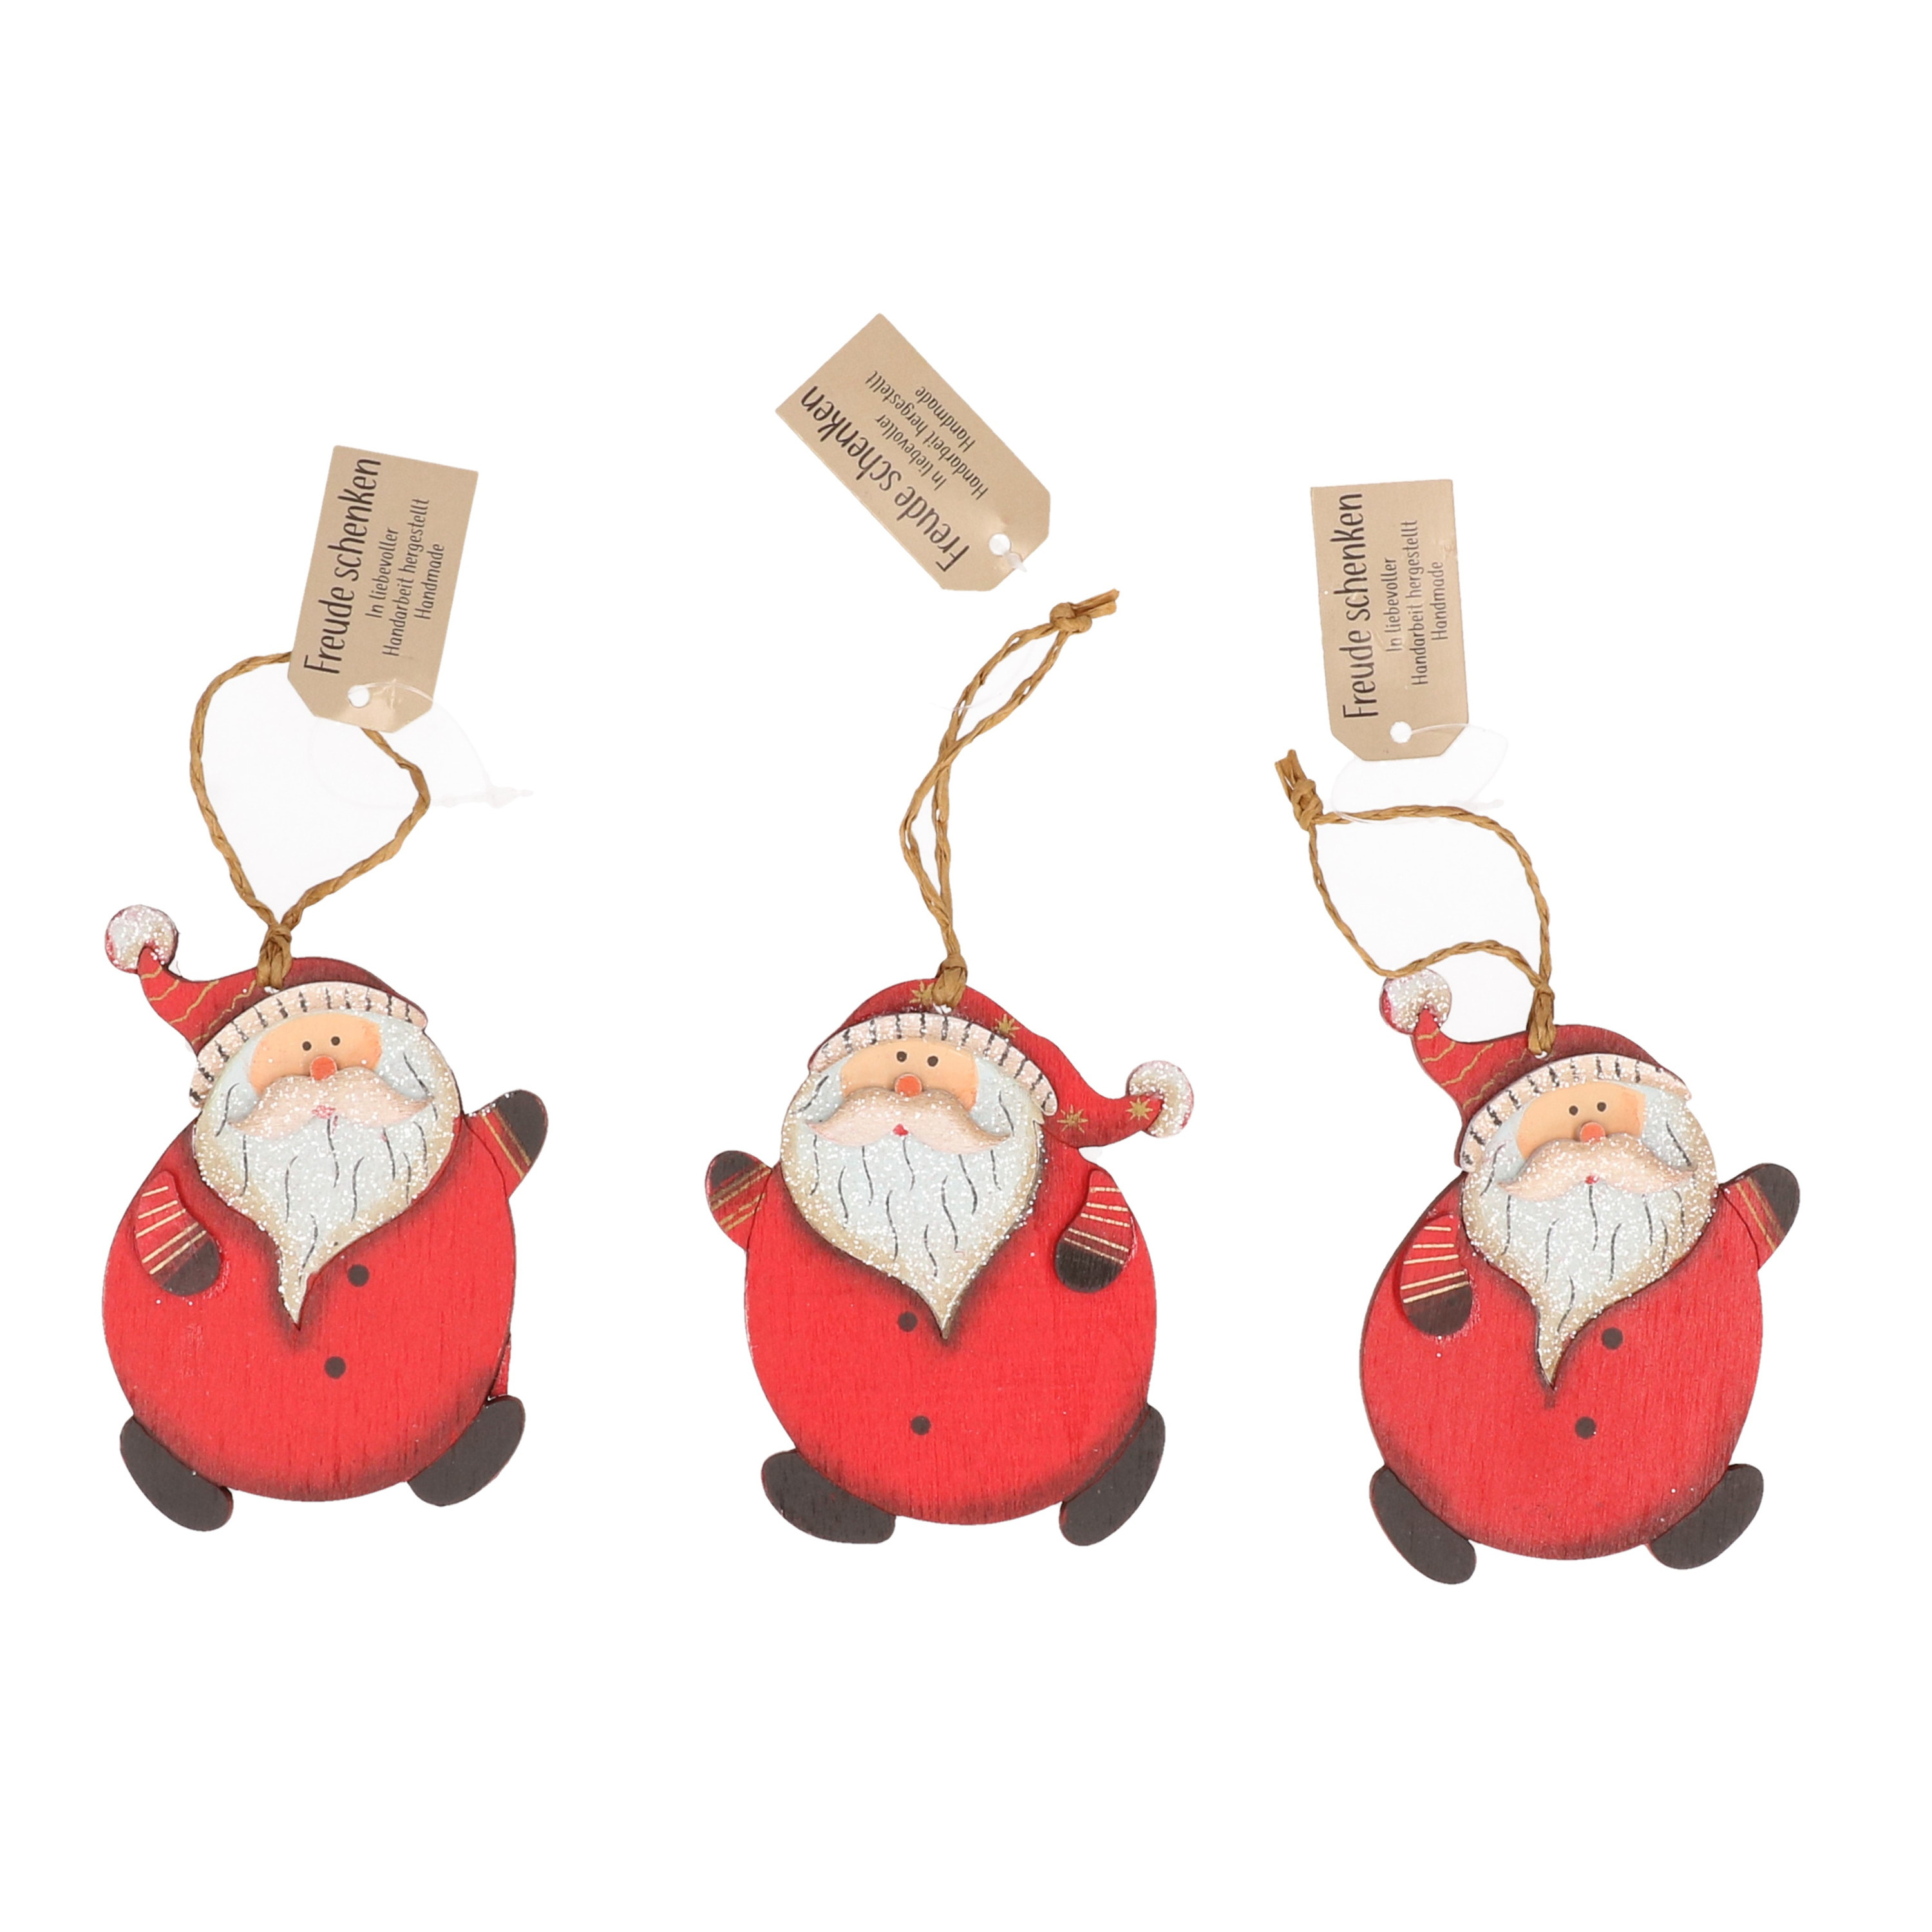 Kersthangers 3x stuks kerstmannen hout 10 cm kerstornamenten